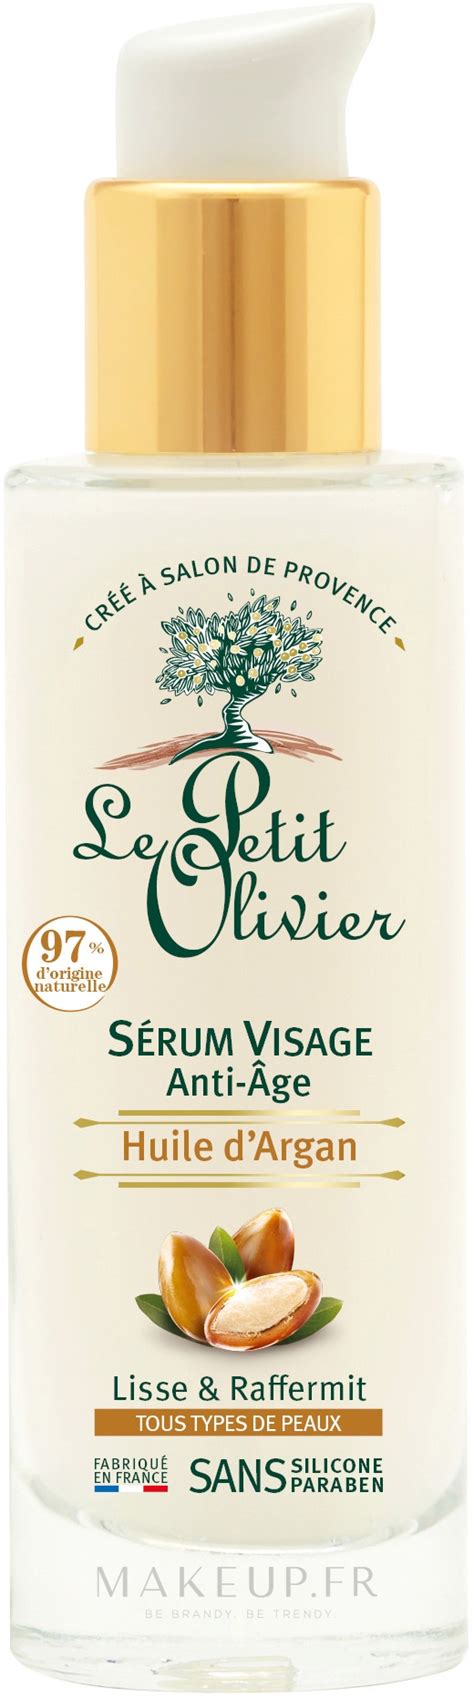 Le Petit Olivier Argan Oil S Rum Anti Rides Pour Visage Makeup Fr